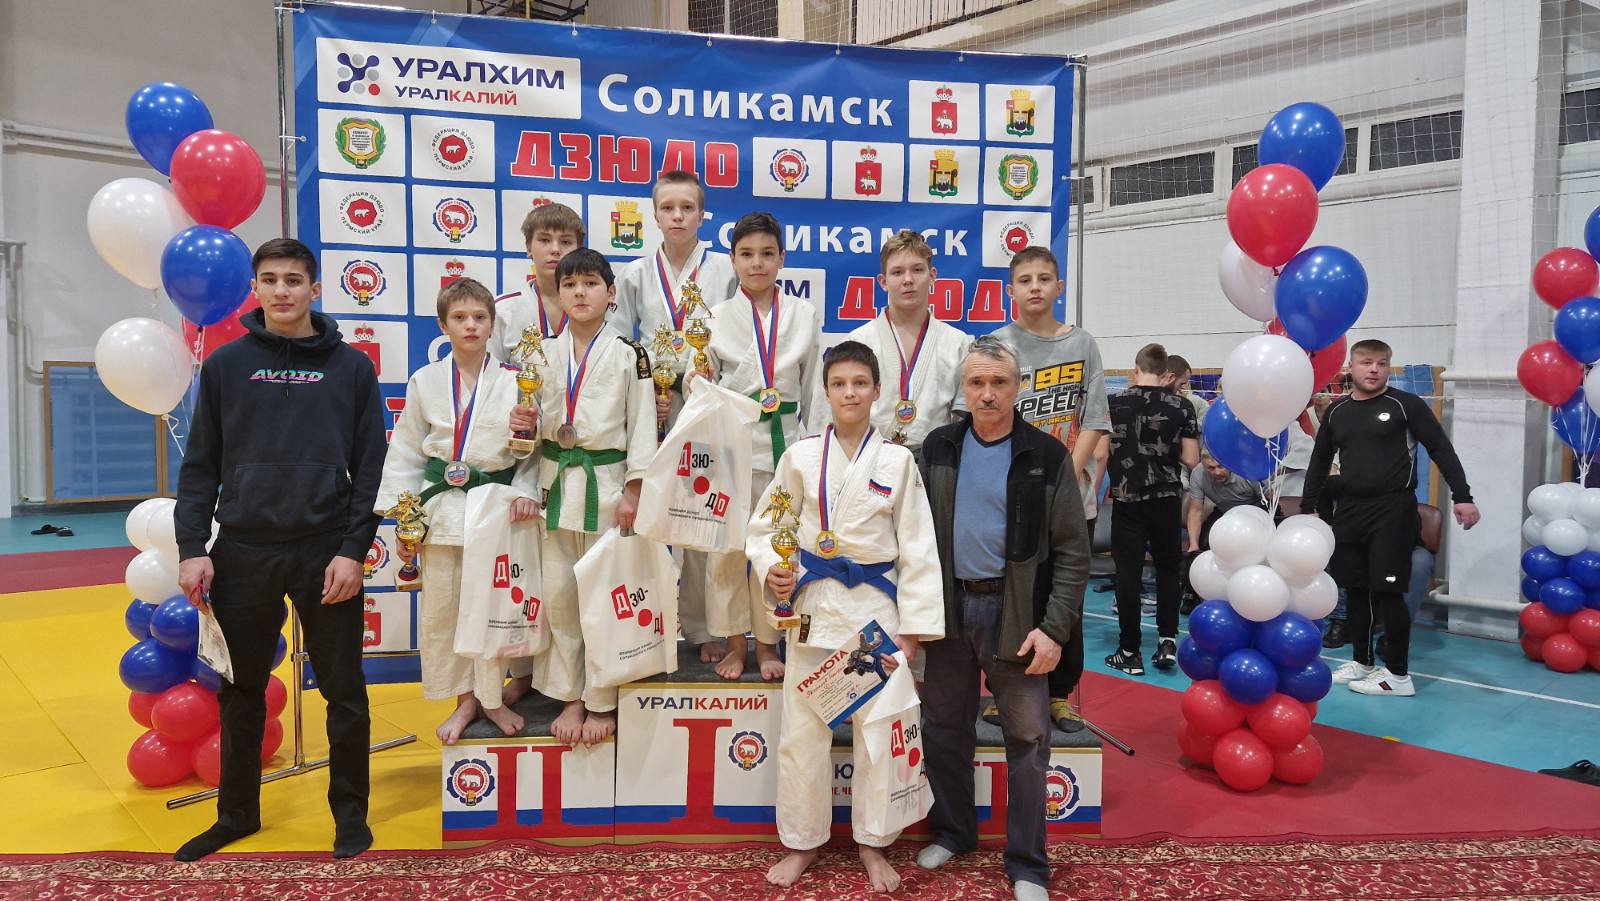 Поздравляем воспитанников СШОР "Витязь", победителей и призеров краевого турнира по дзюдо в г. Соликамске.